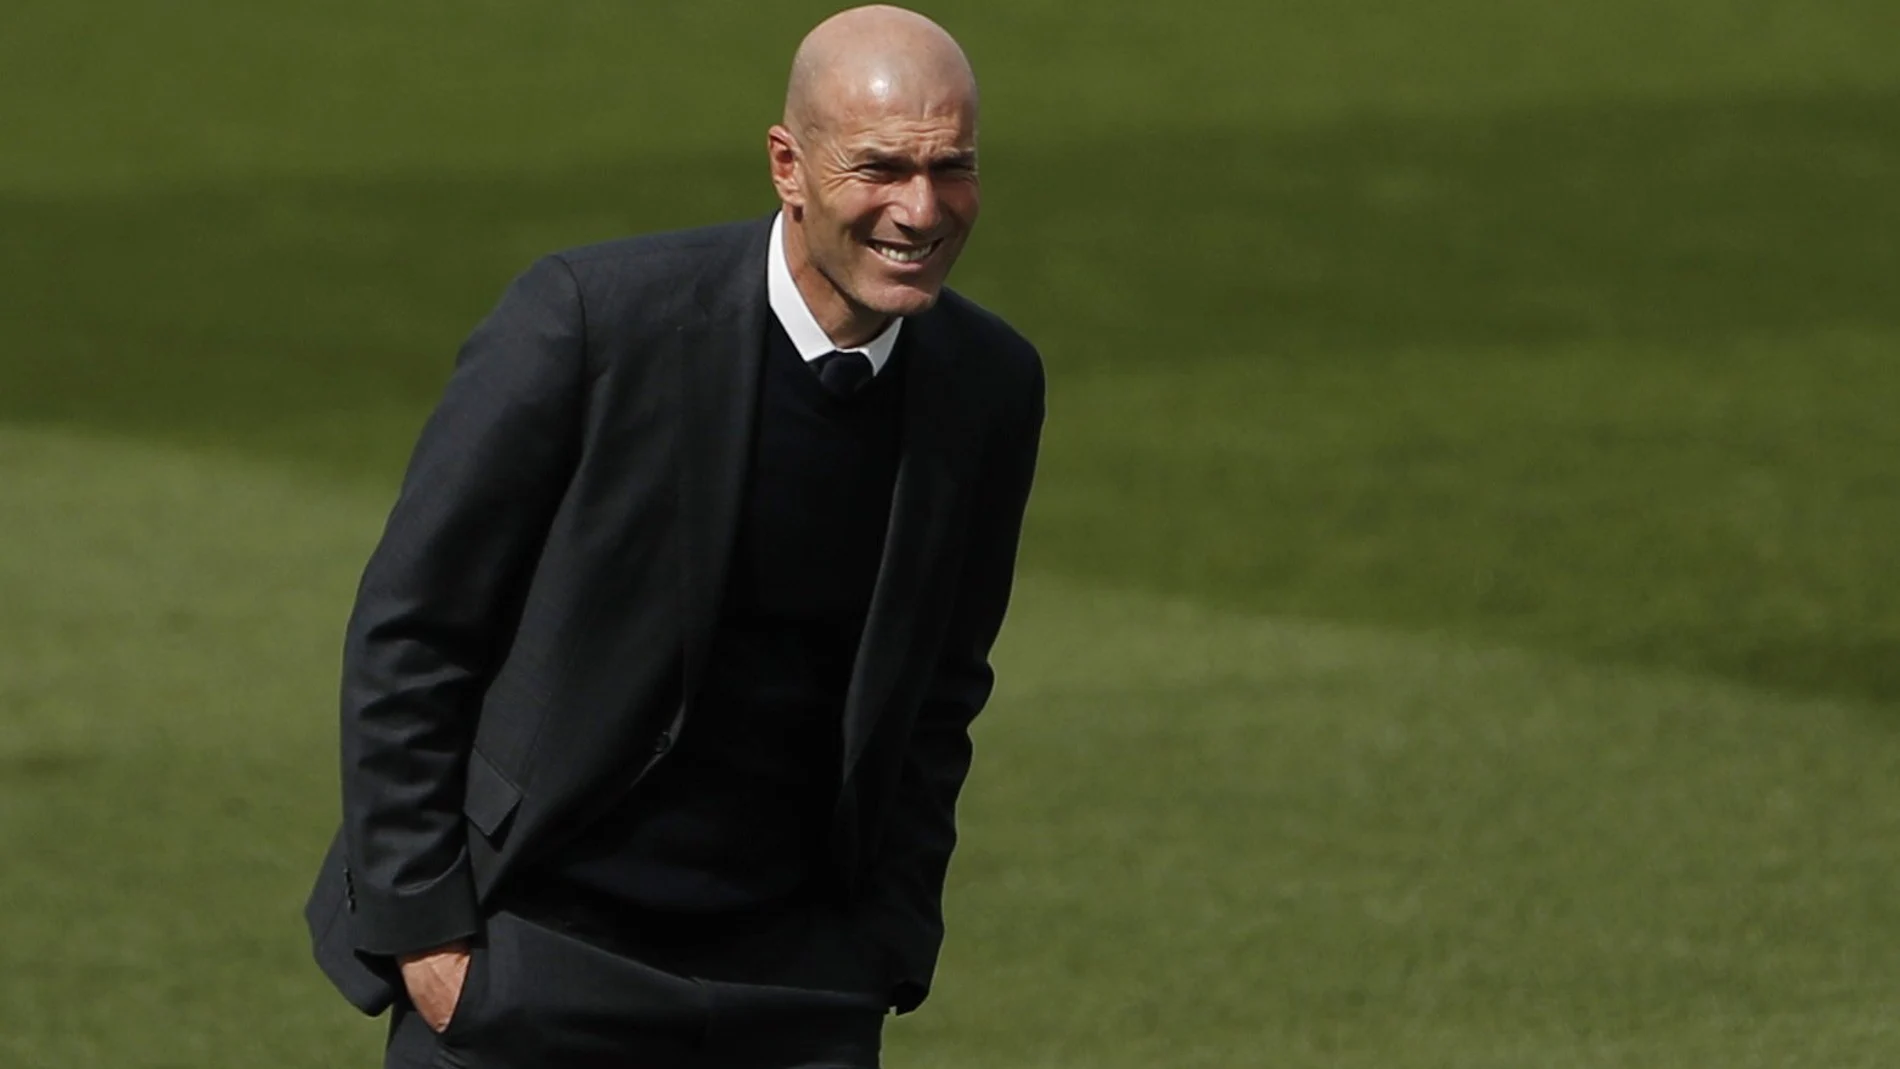 Zidane prepara el partido contra el Liverpool